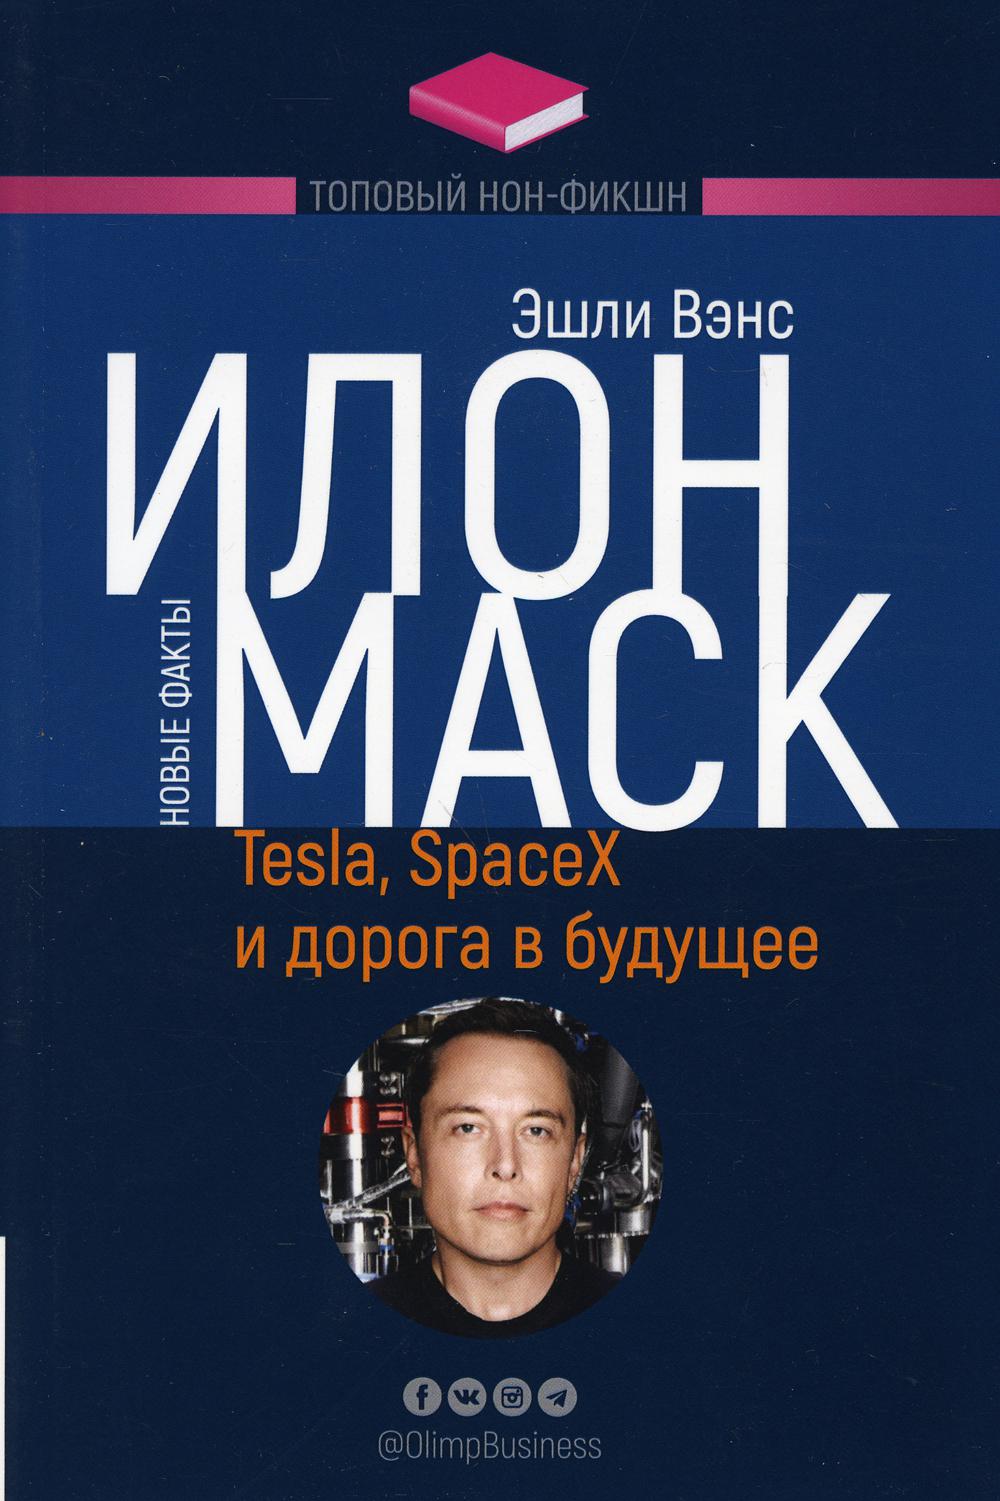 ТОПОВЫЙ НОН-ФИКШН. Илон Маск: Tesla, SpaceX и дорога в будущее